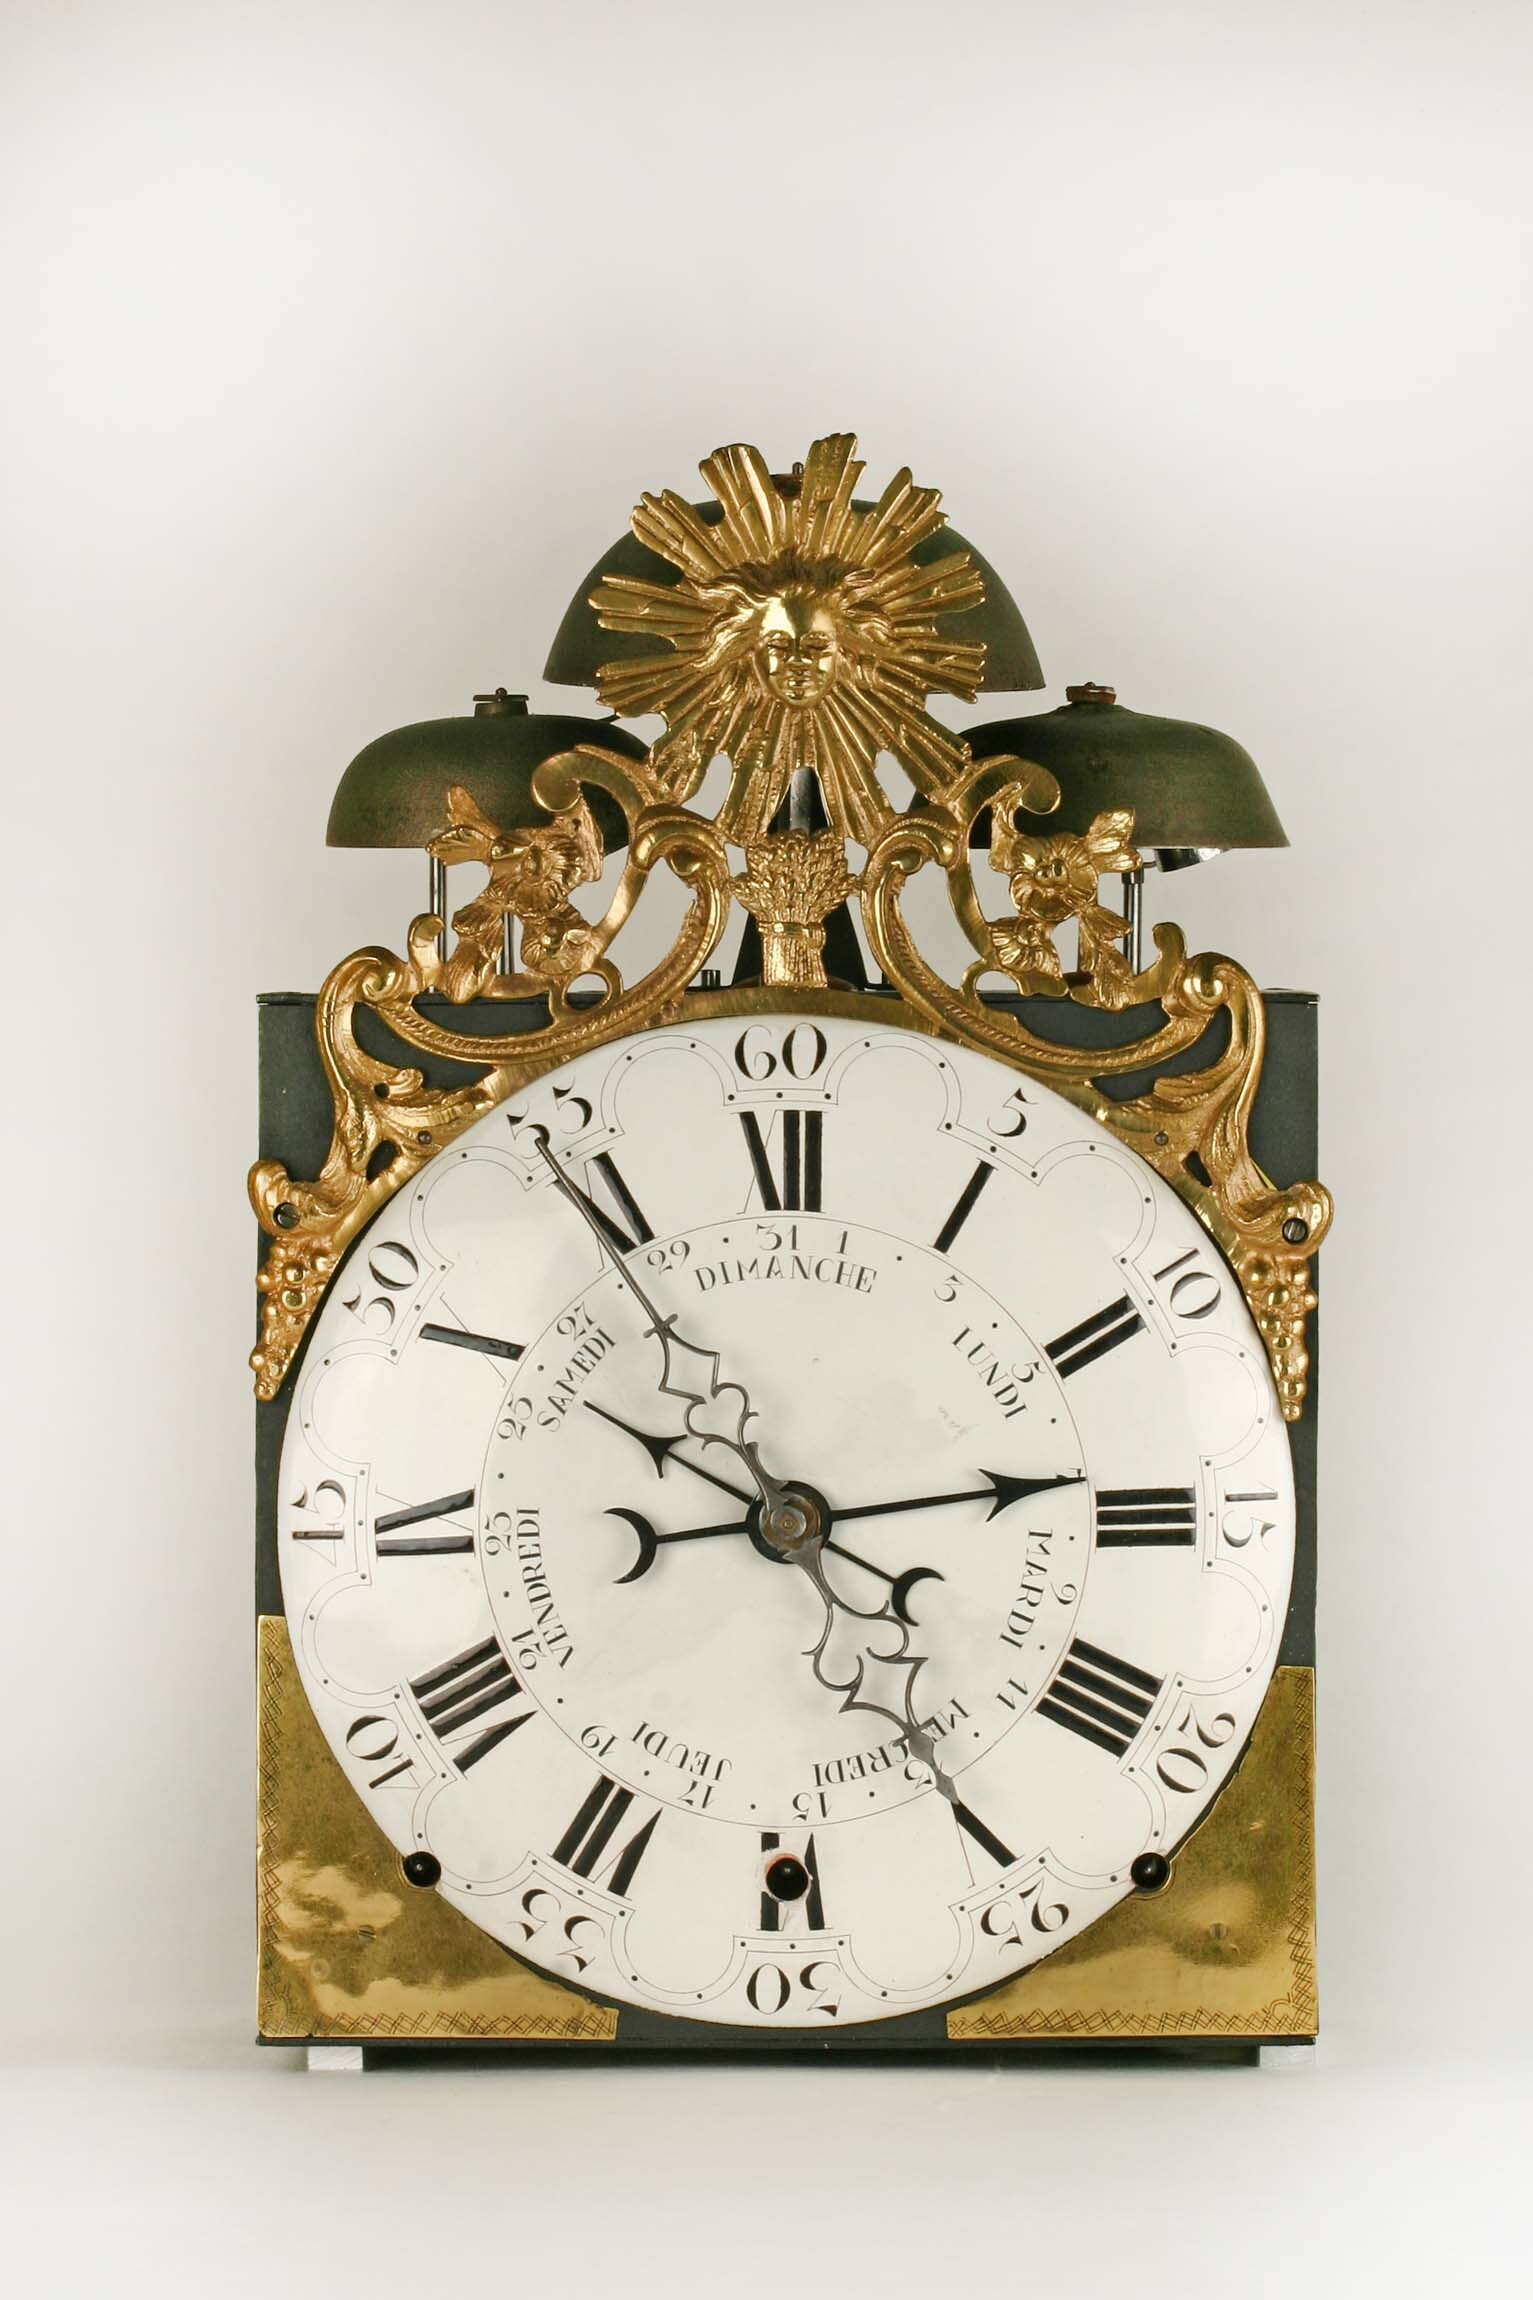 Comtoiseuhr, Frankreich, 2. Hälfte 18. Jahrhundert (Deutsches Uhrenmuseum CC BY-SA)